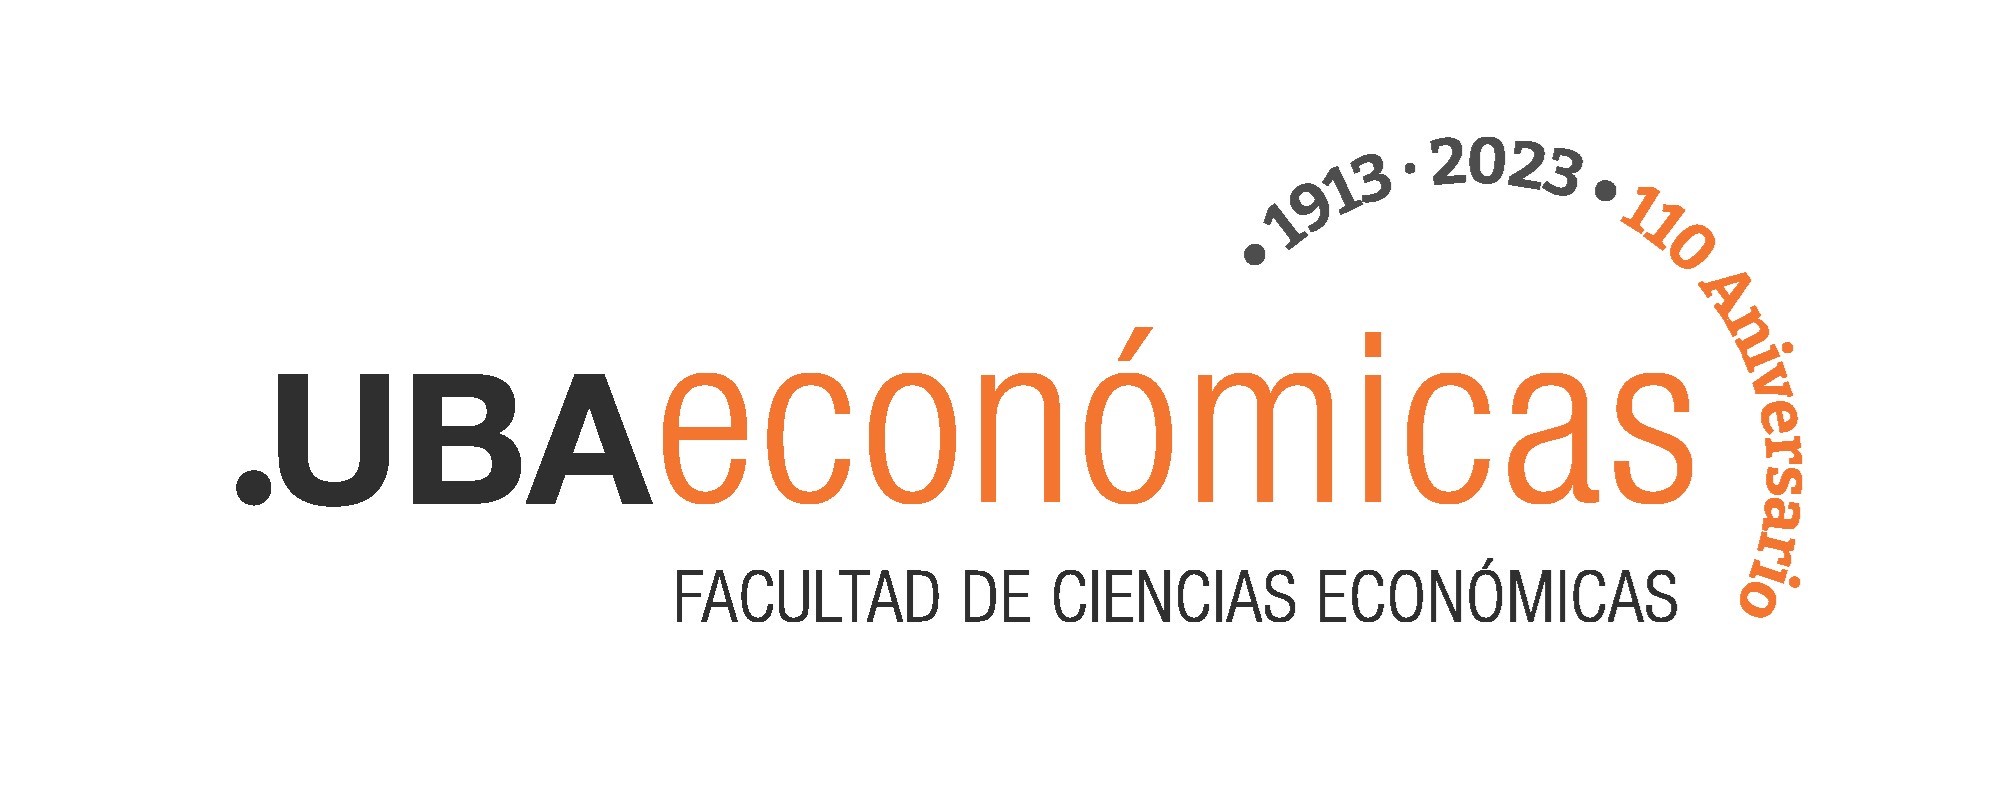 Universidad de Buenos Aires, Facultad de Ciencias Económicas